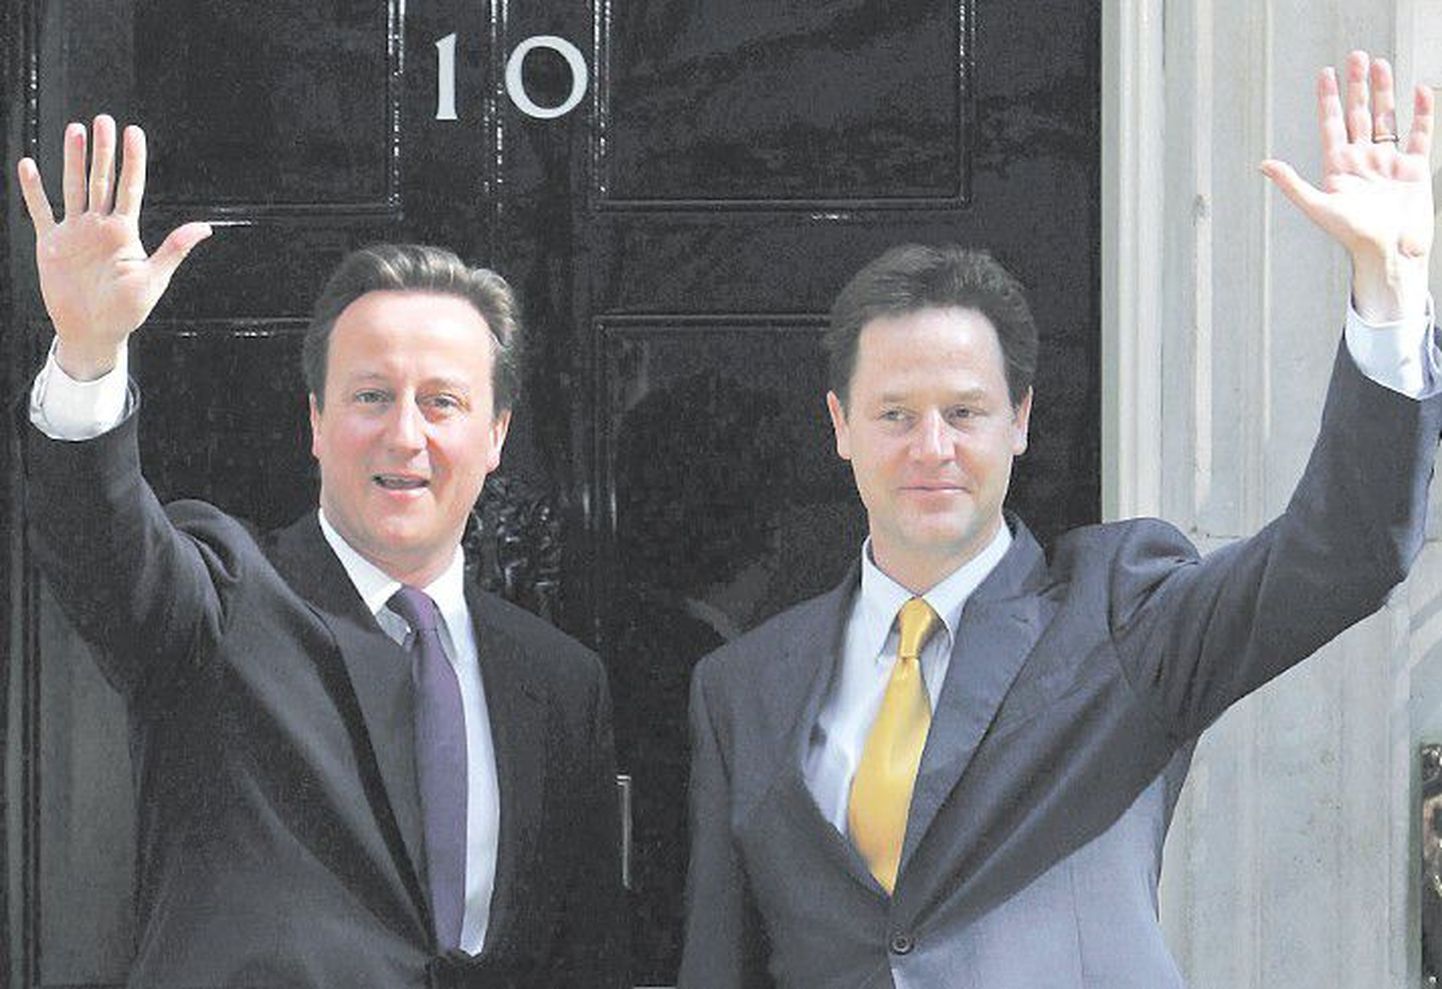 Новый премьер-министр Дэвид Кэмерон (слева) и его партнер по коалиции Ник Клегг перед резиденцией правительства.